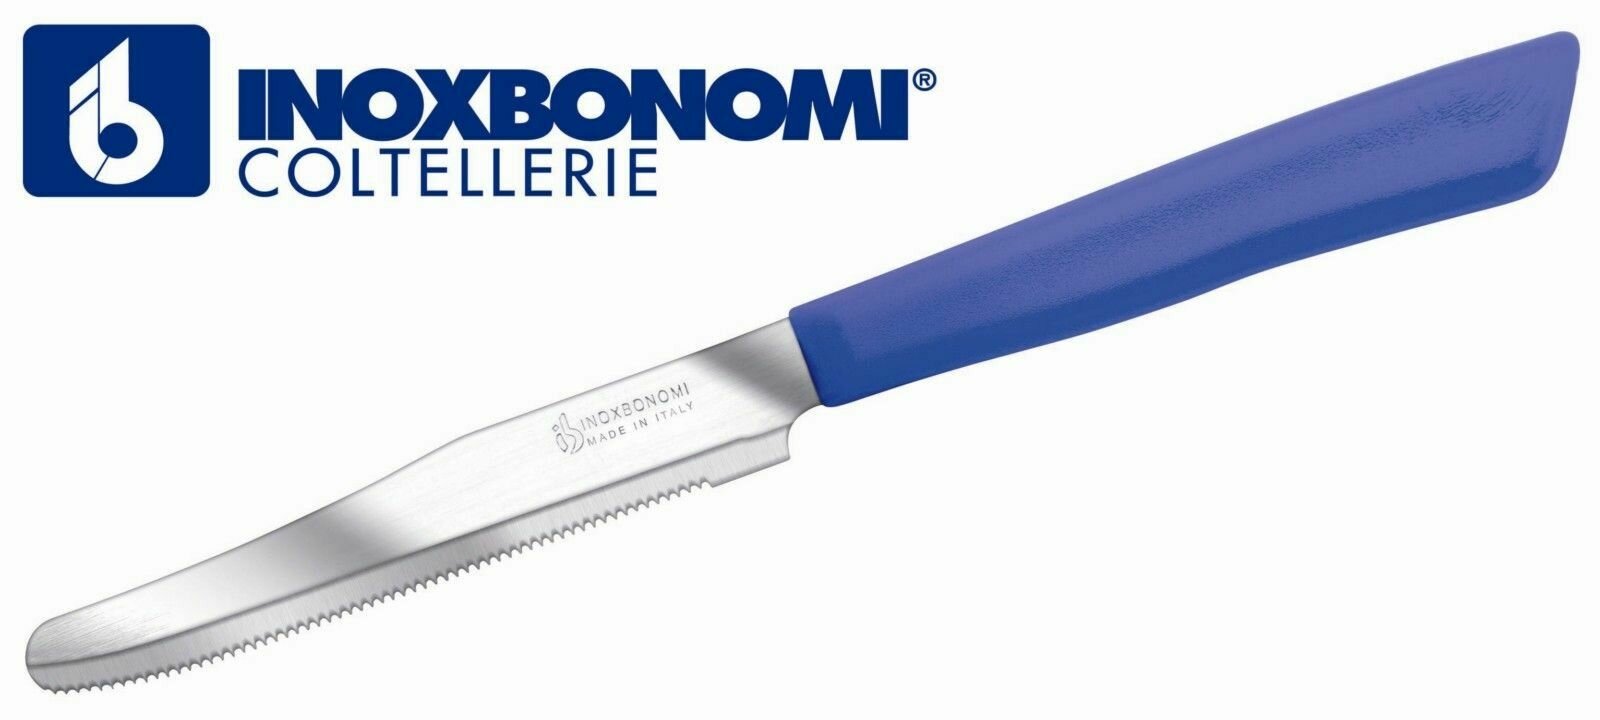 Столовый нож синий INOXBONOMI Coltellerie Италия 6шт.